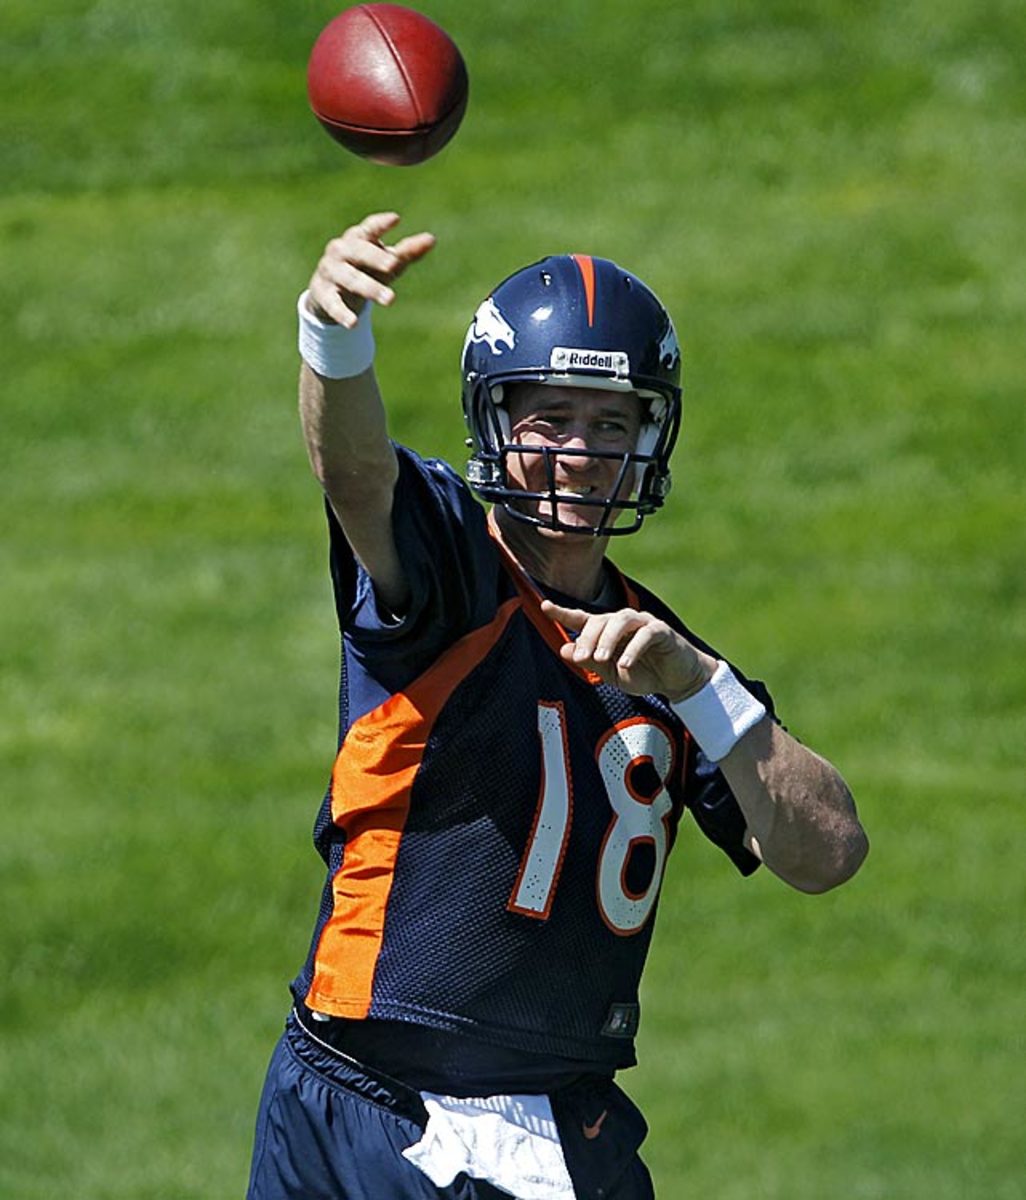 Peyton Manning, QB